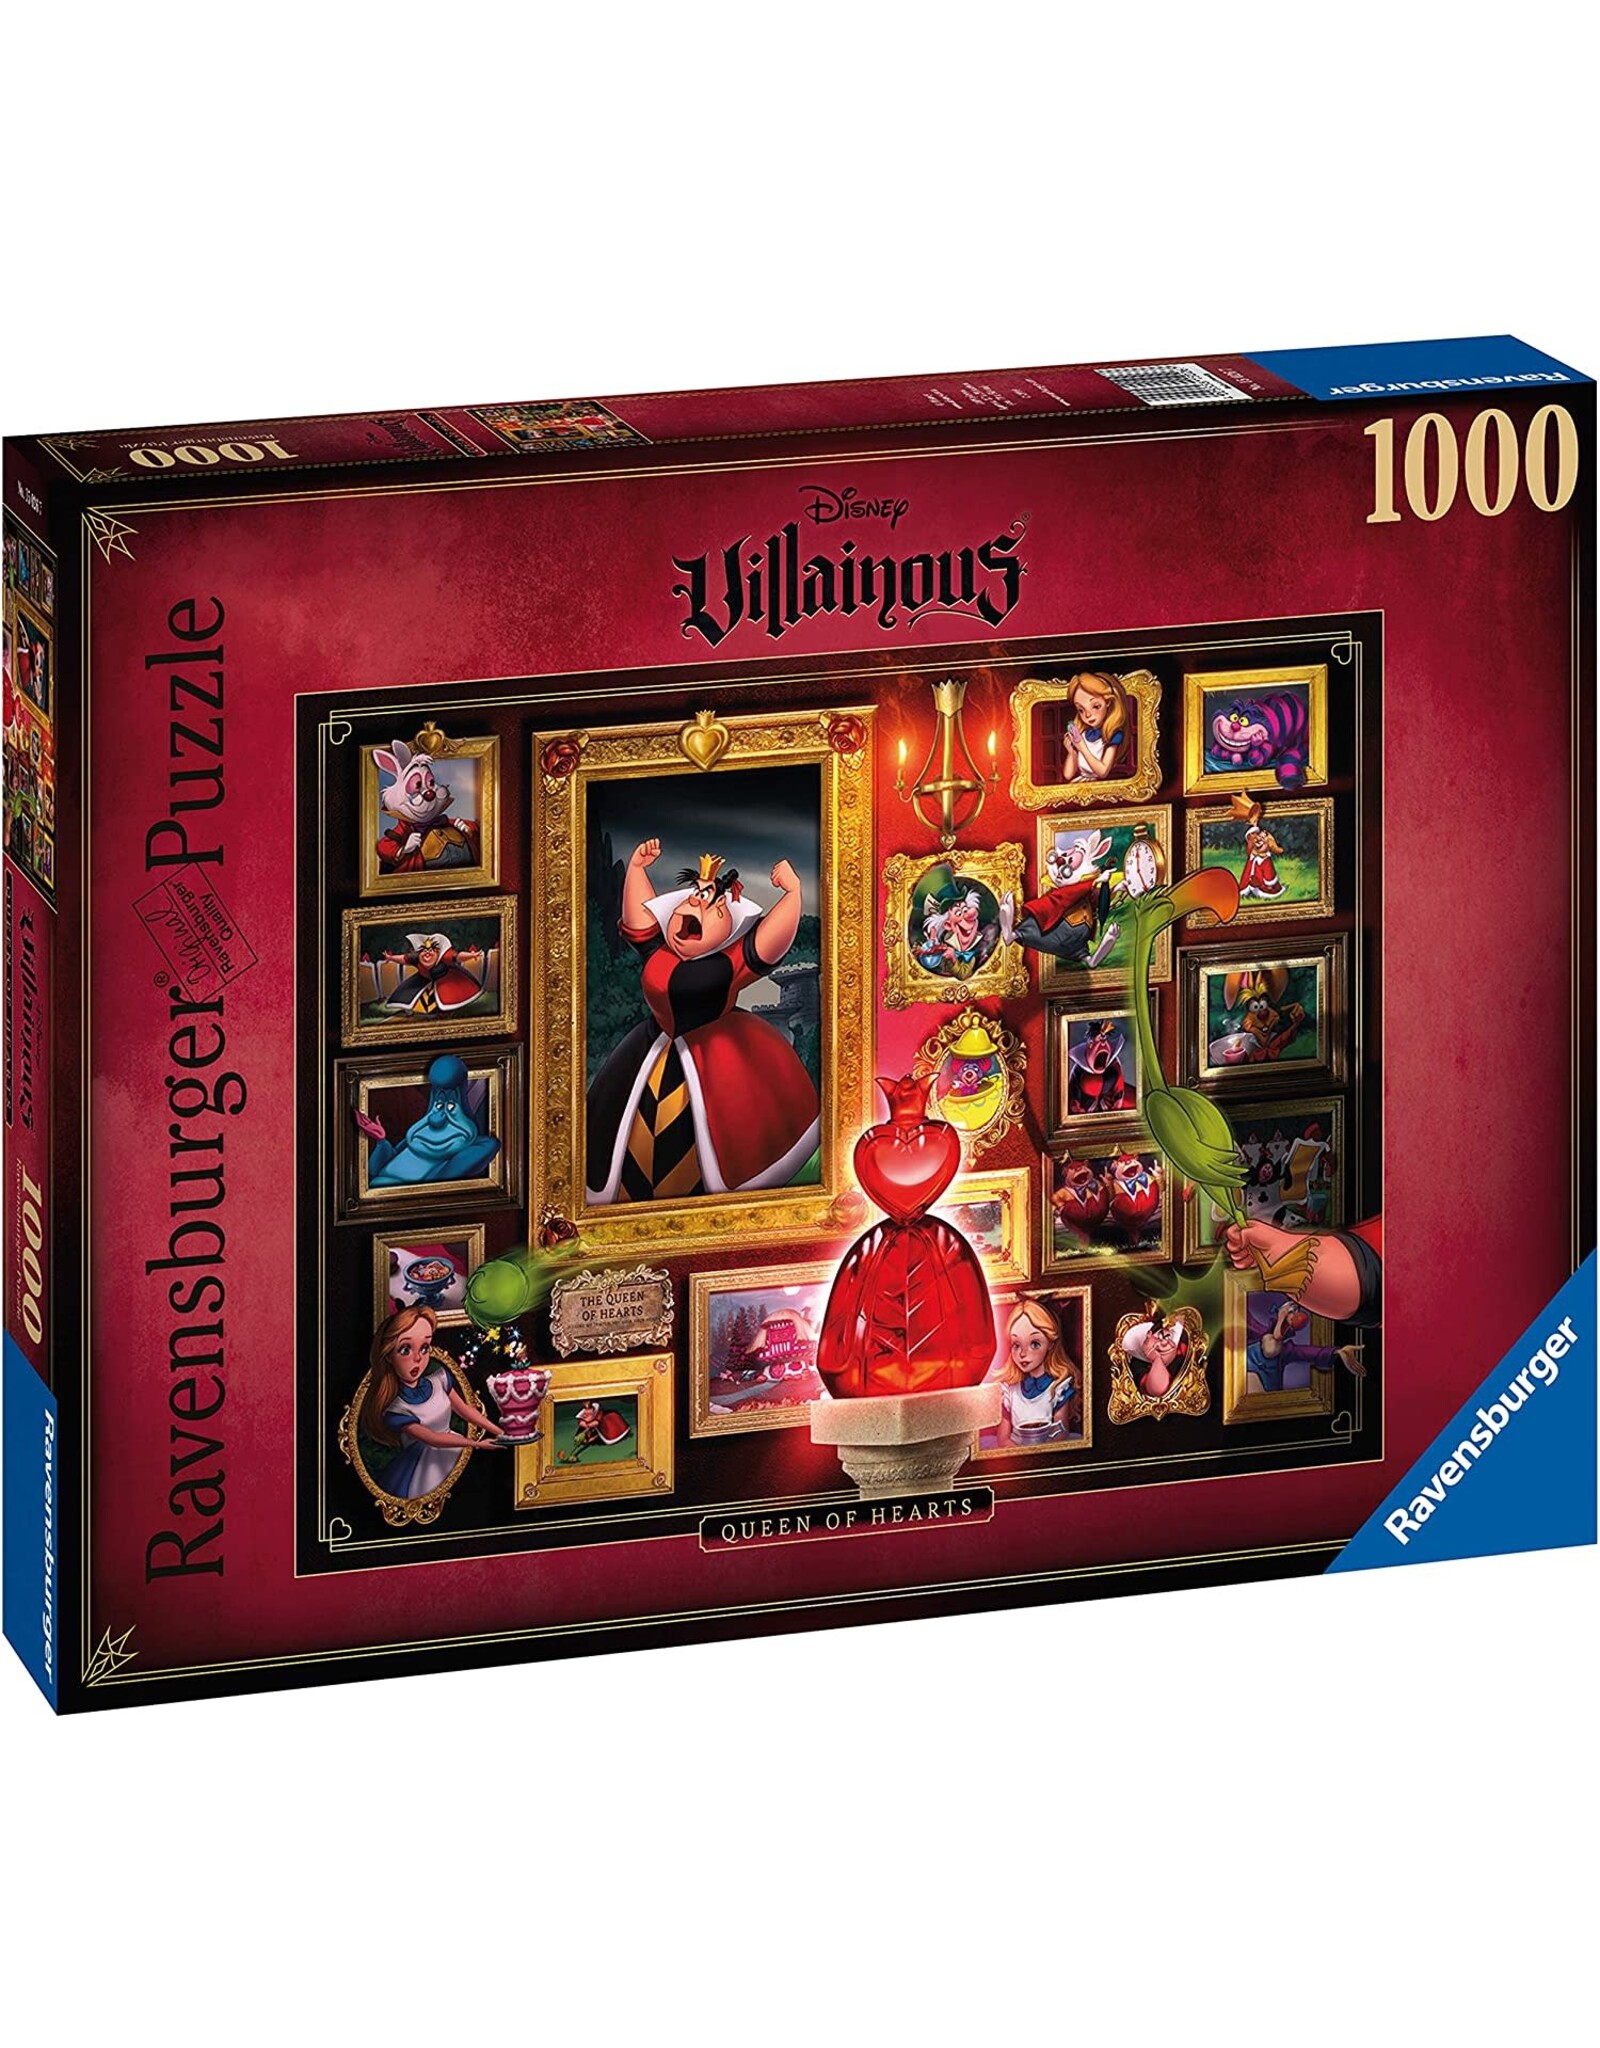 Ravensburger Villainous 1000pc Puzzle: Queen of Hearts